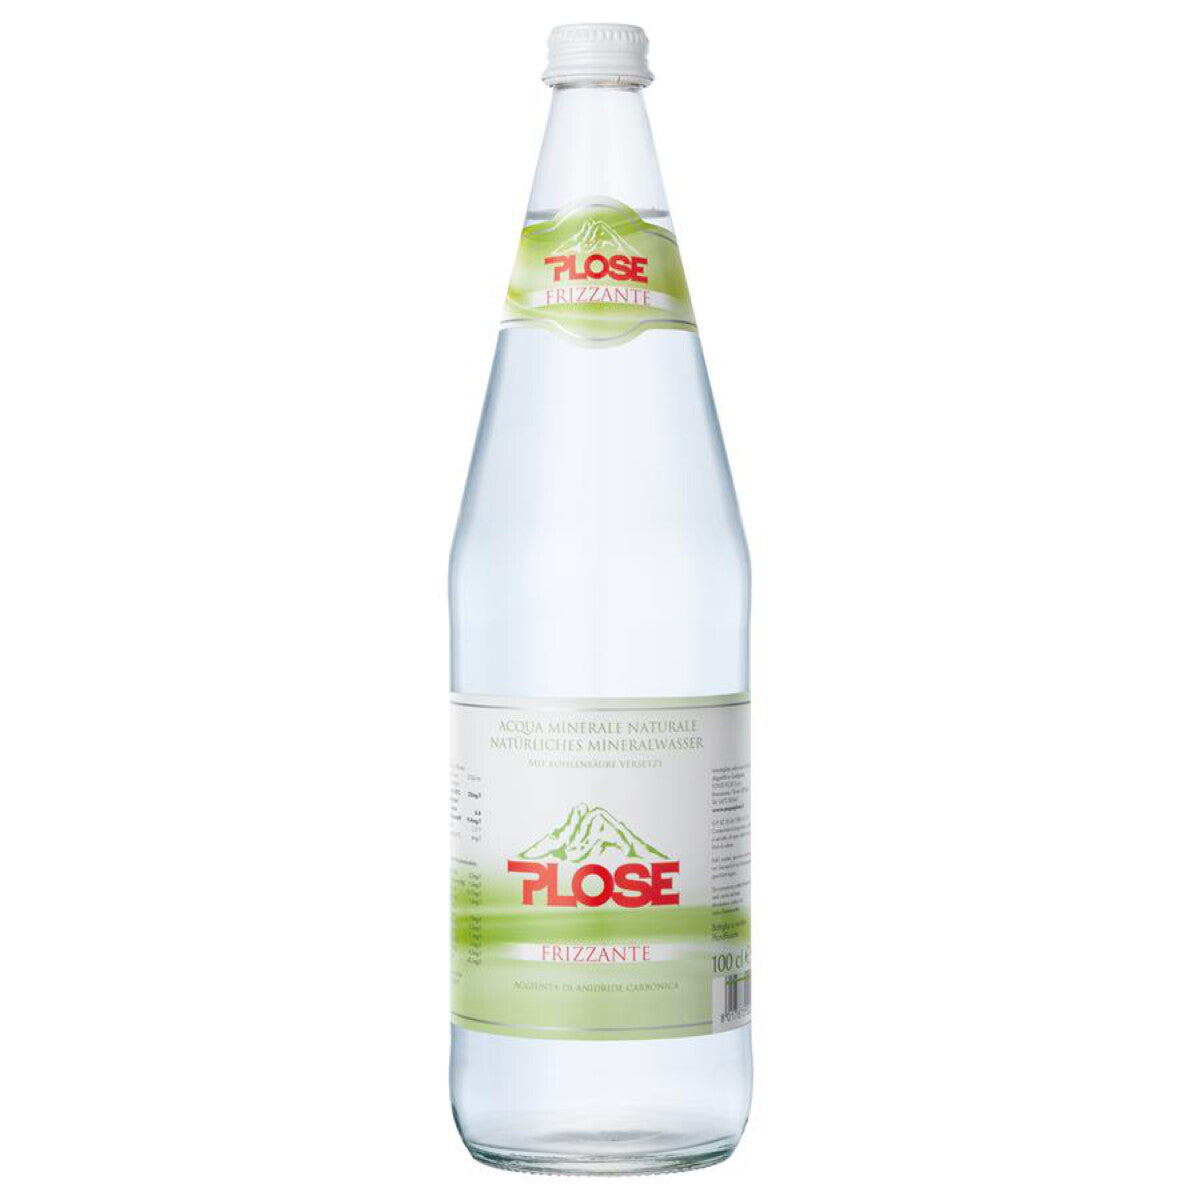 PLOSE Mineralwasser Frizzante - 1 l